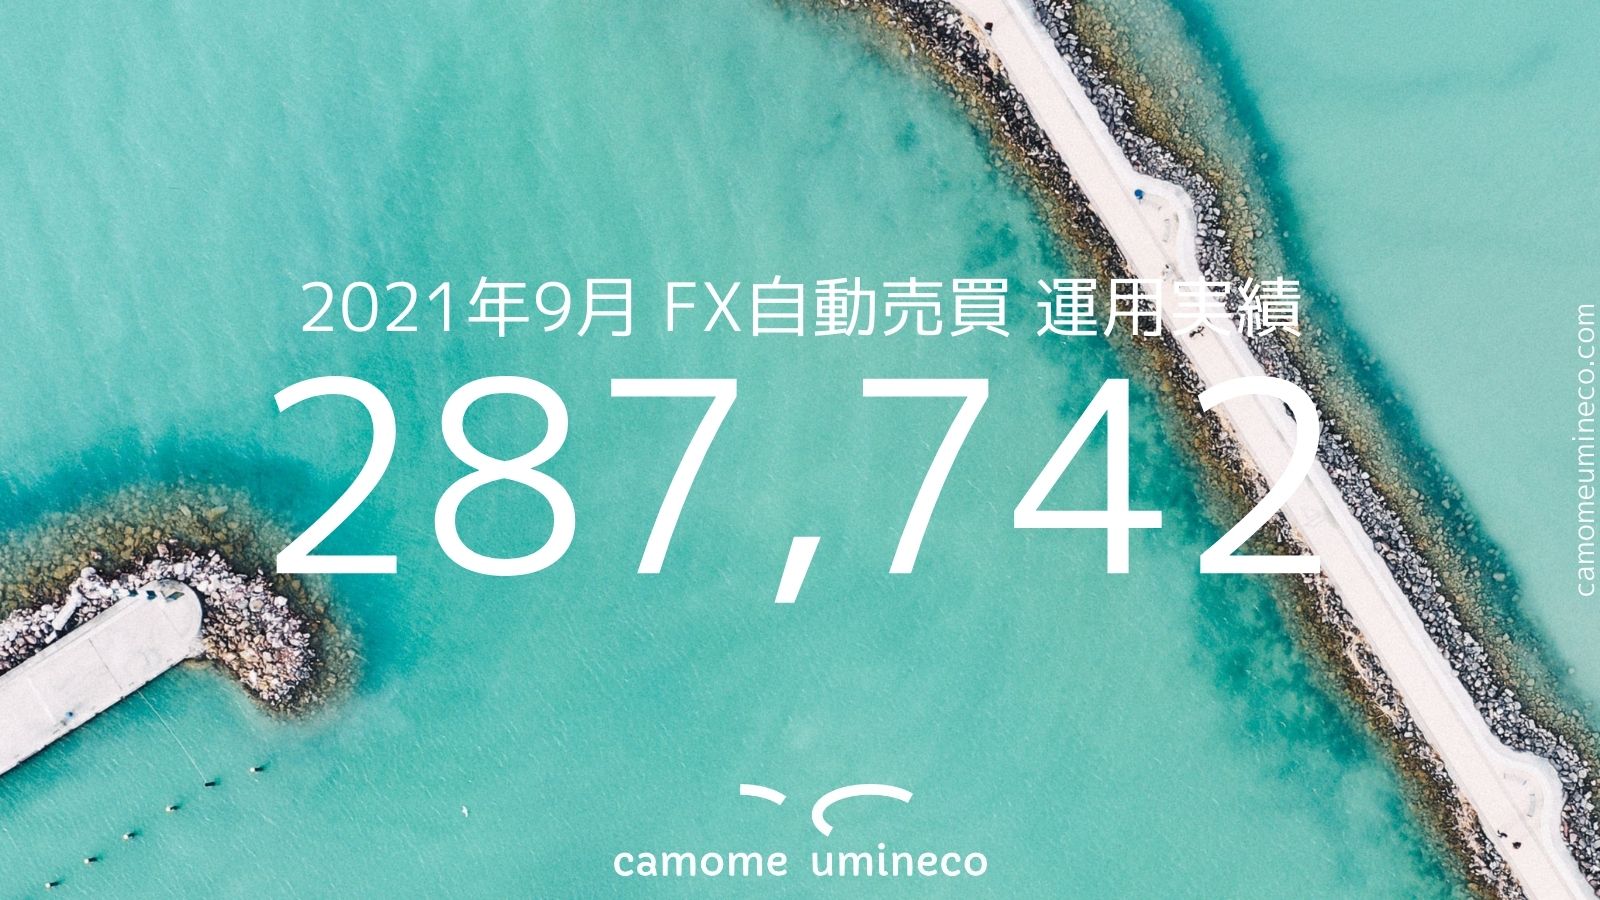 【トライオートFX】2021年9月 運用実績 287,742円